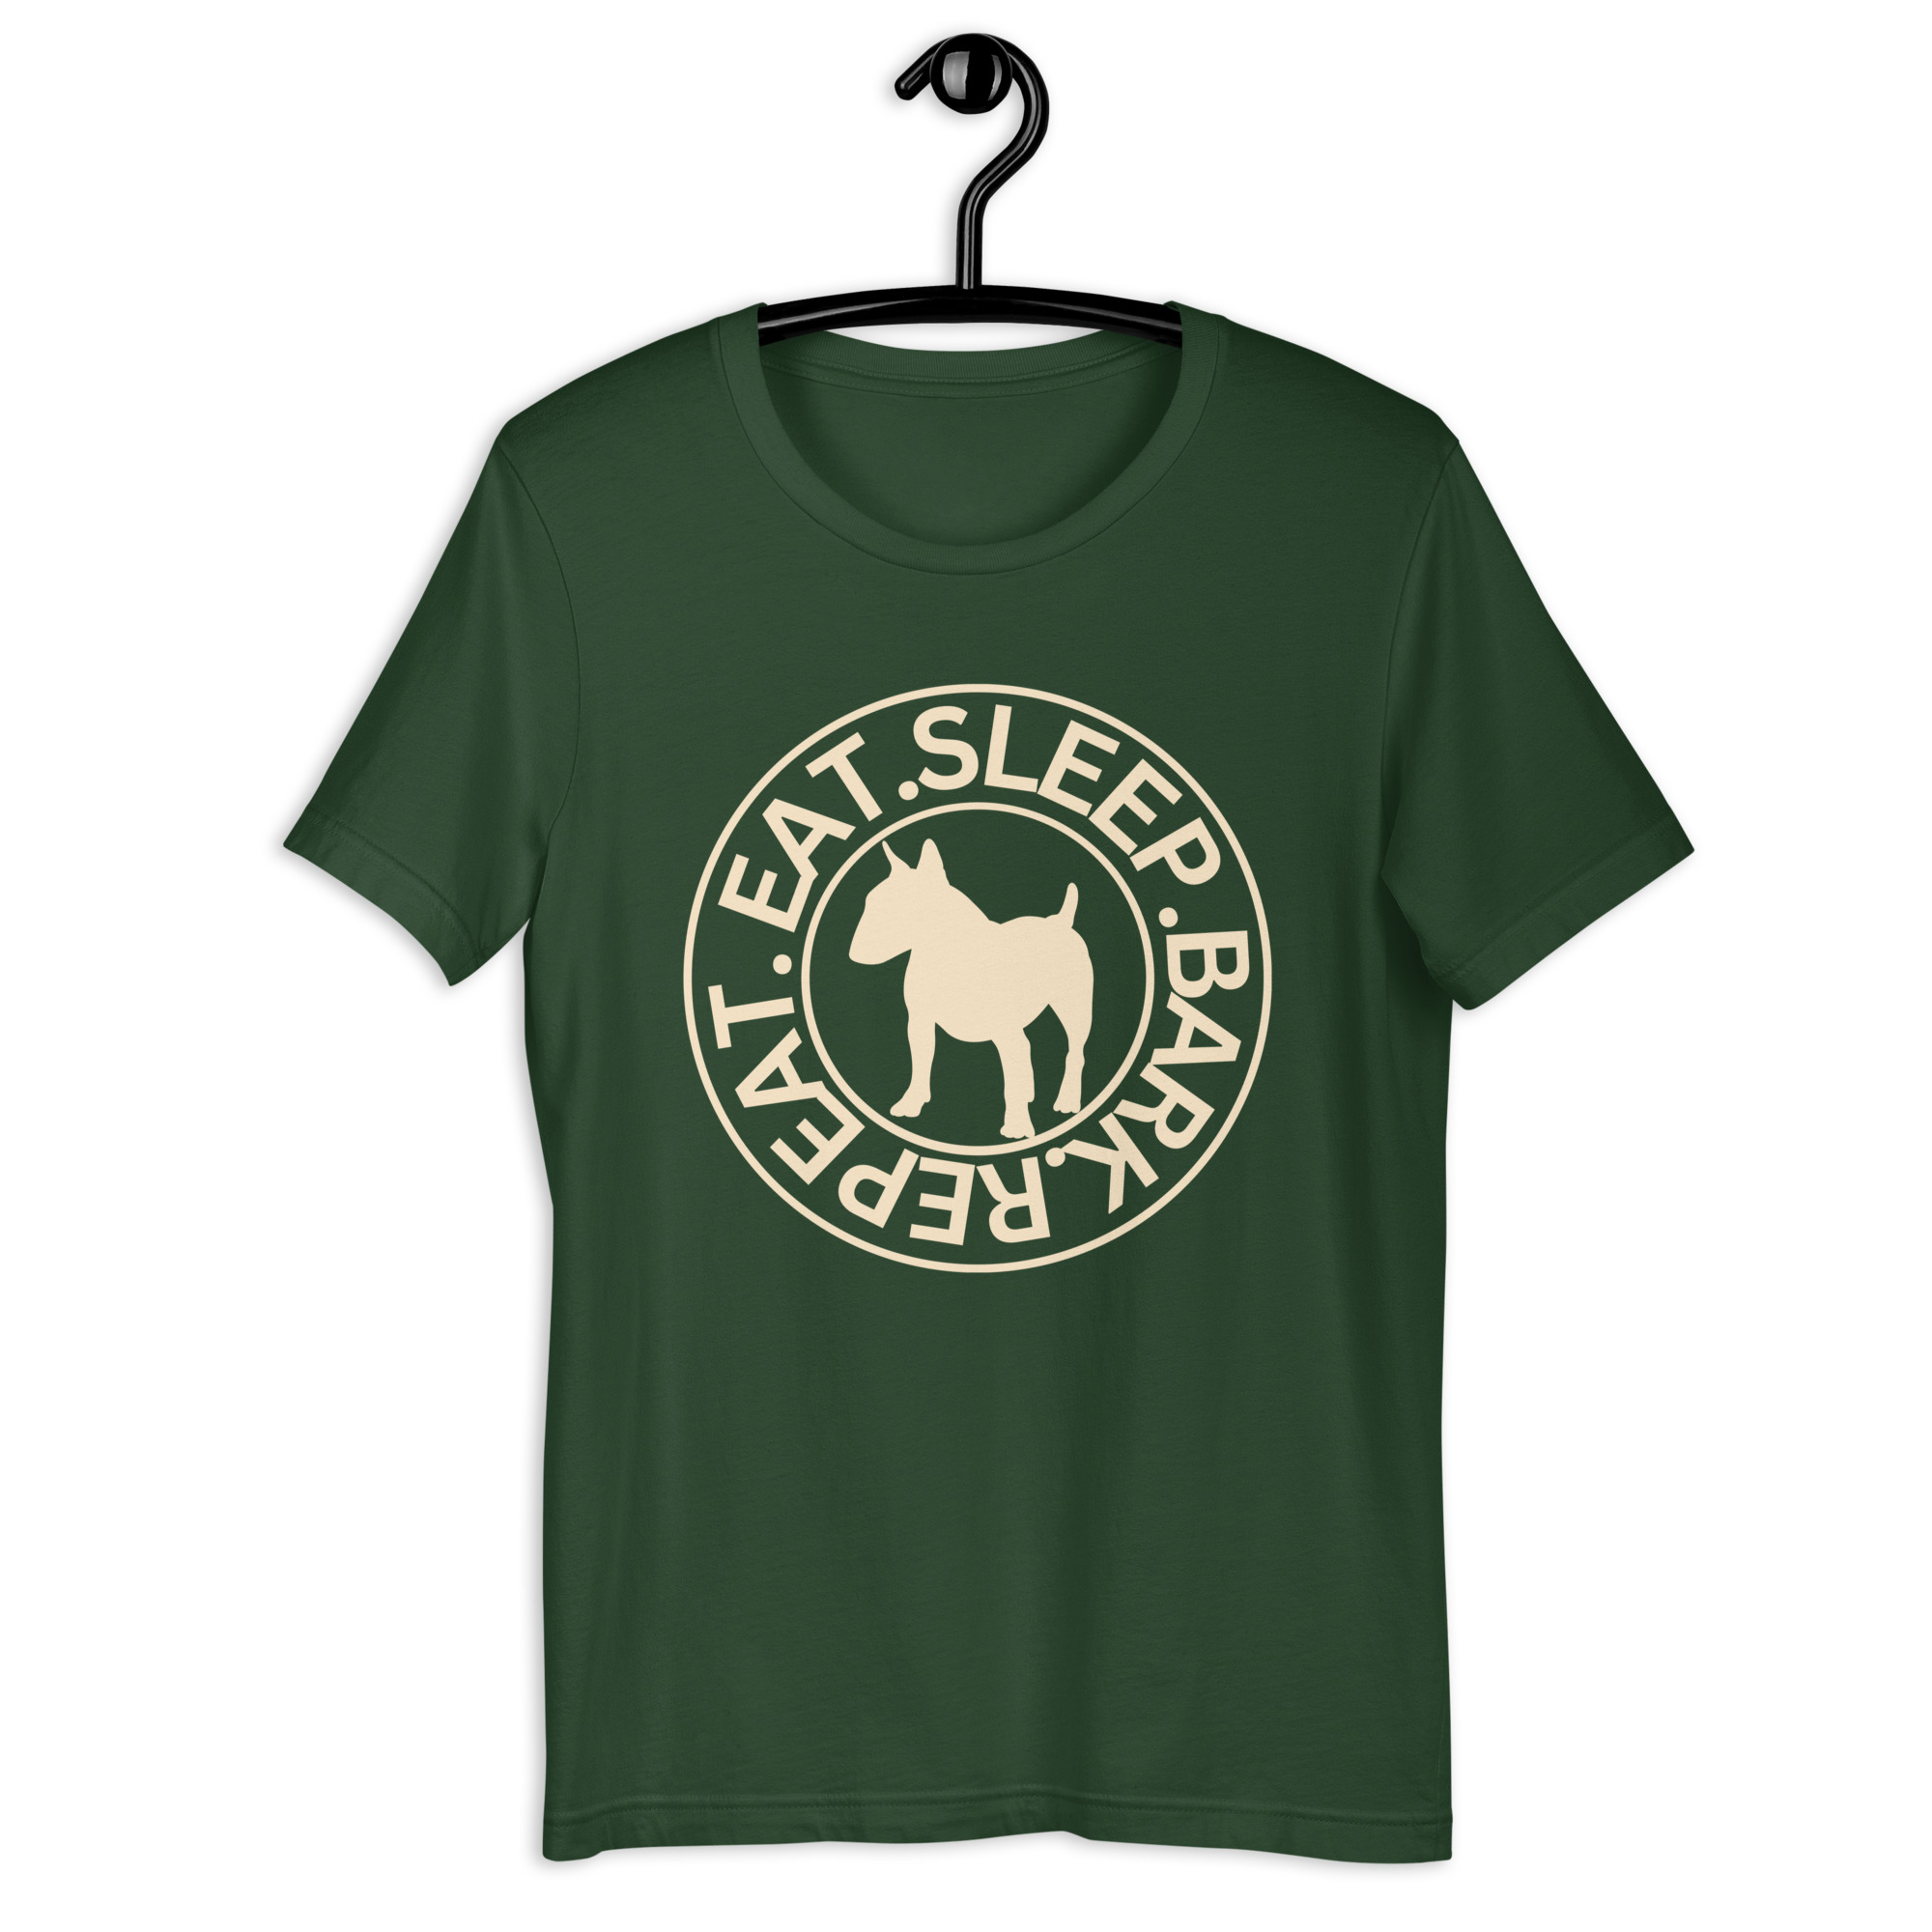 Eat Sleep Bark Repeat Bull Terrier Unisex T-Shirt. Forest